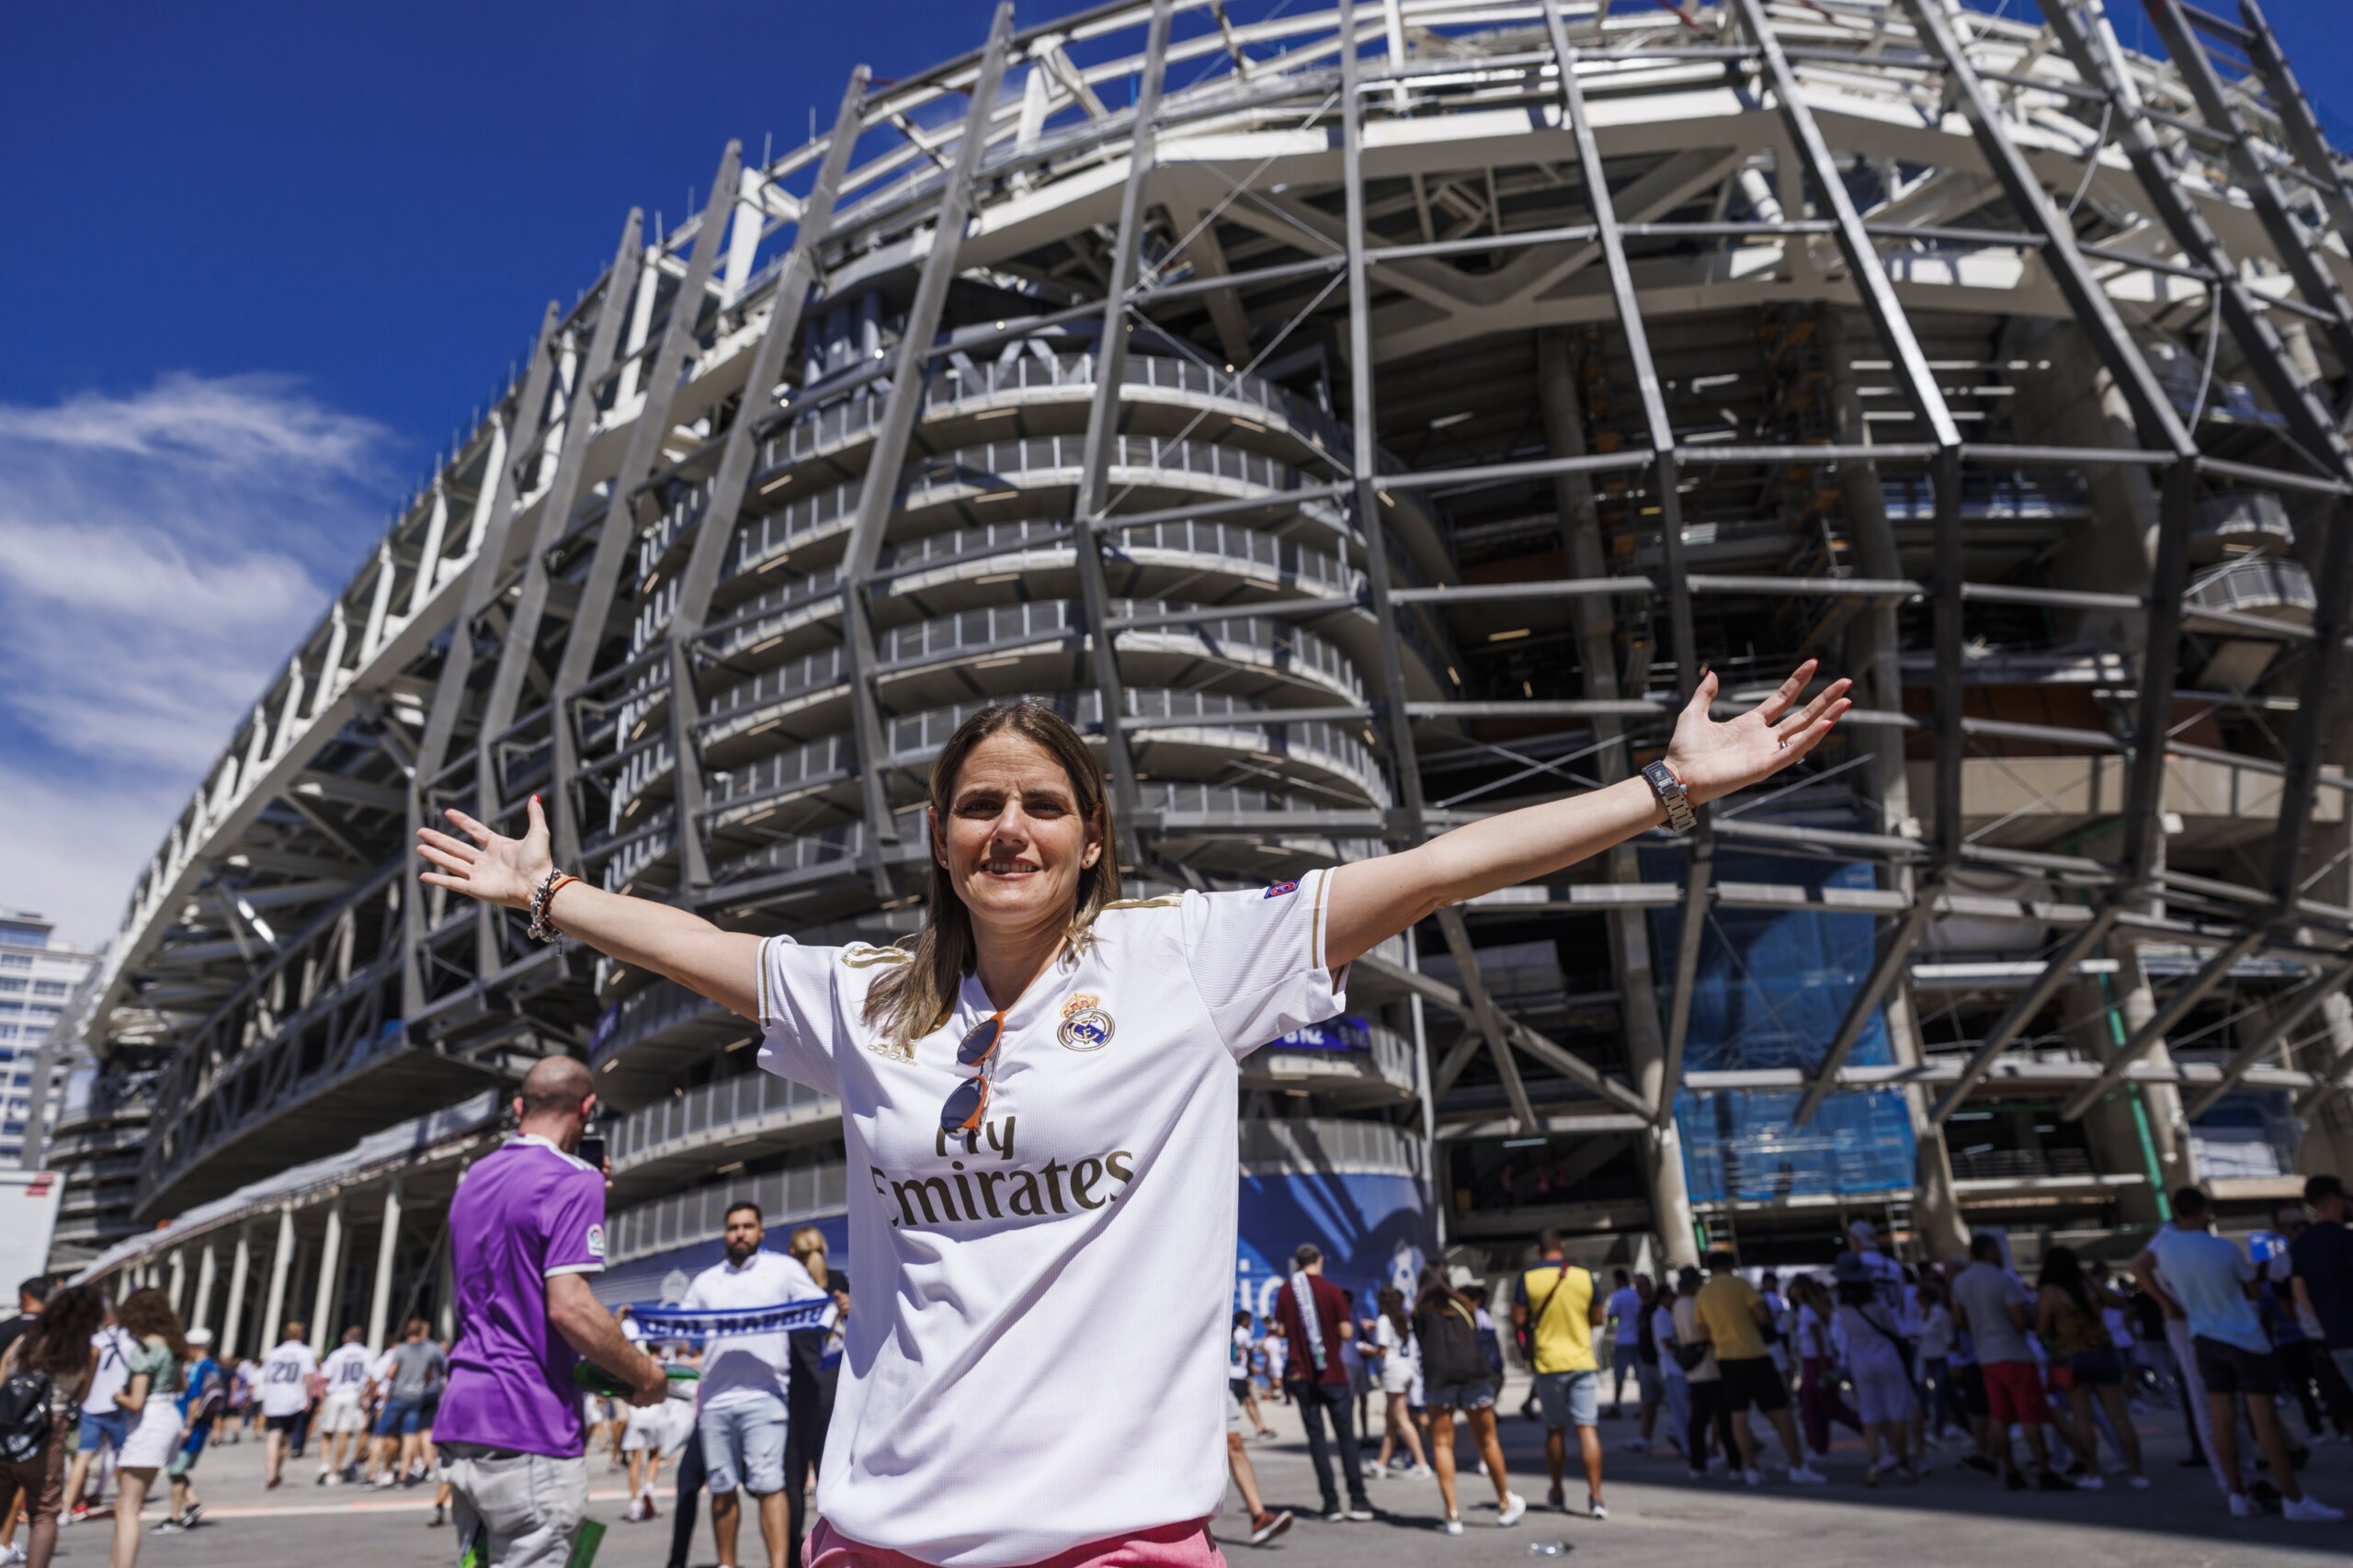 La mamá del fútbol salvaje está de vuelta en España cerca de su amado Real Madrid